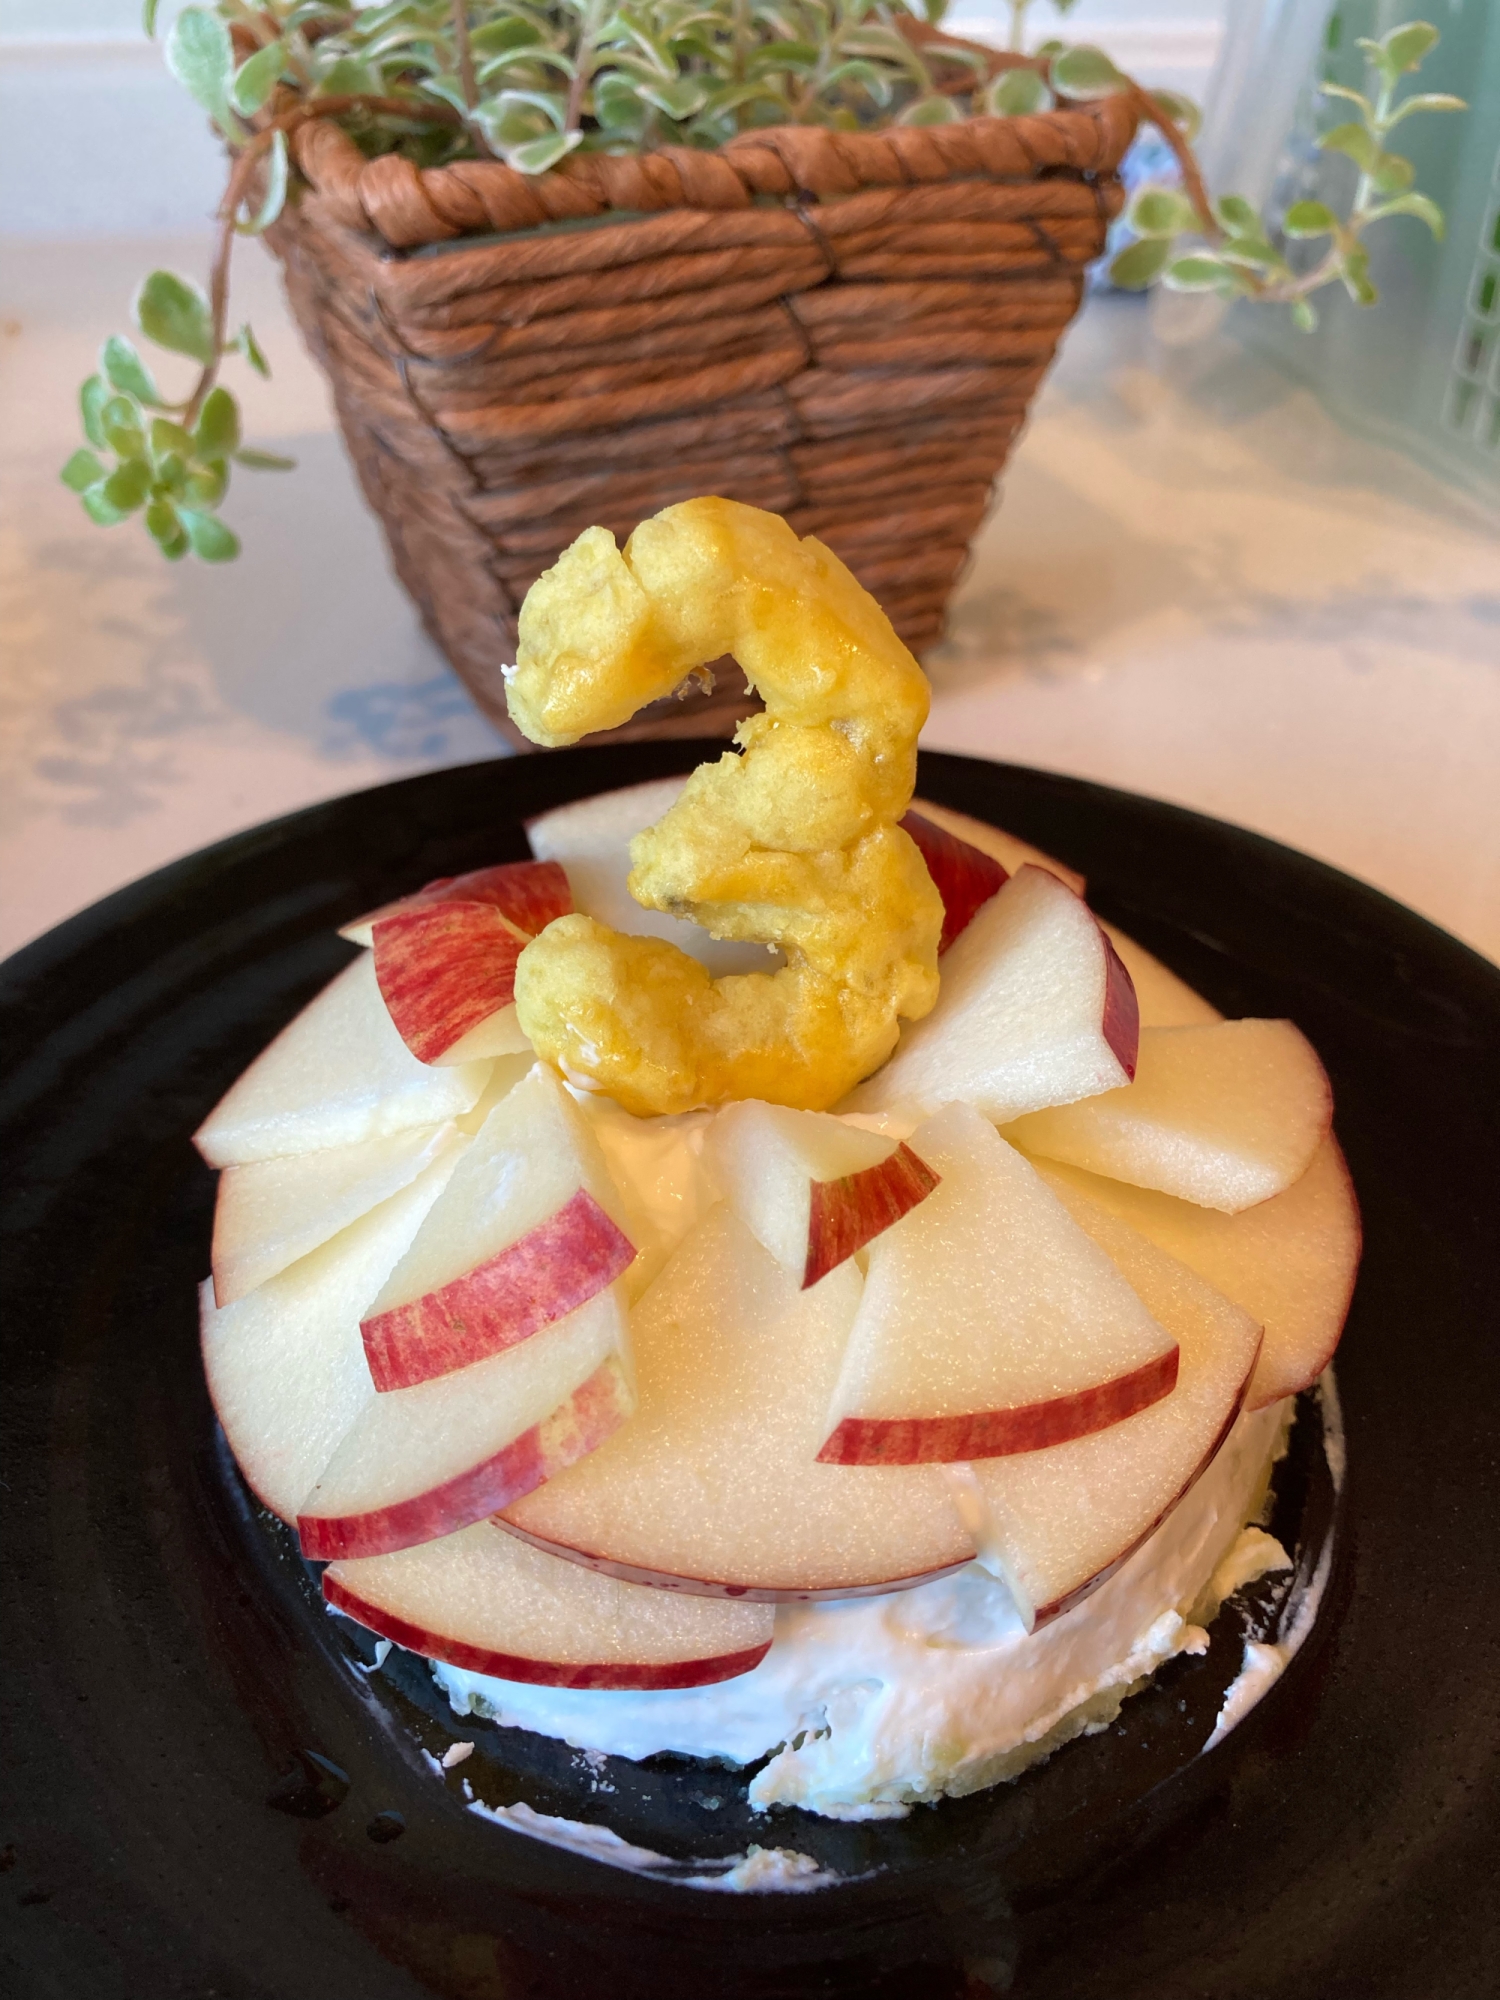 さつまいもとりんごのお誕生日ケーキ 犬用 レシピ 作り方 By コロン S Kitchen 楽天レシピ